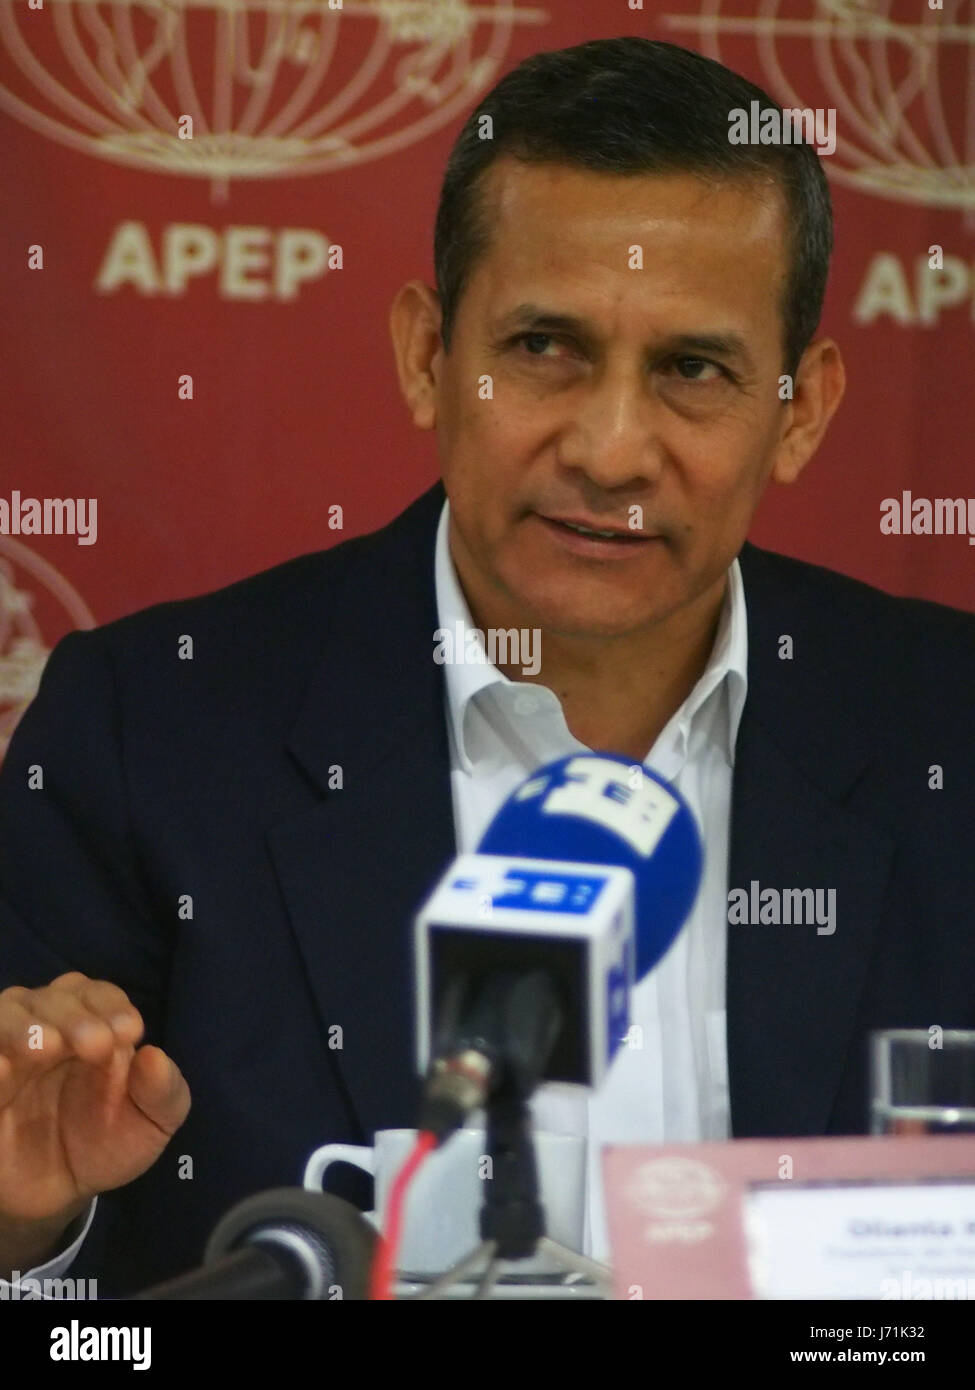 Ollanta Humala, ancien président, a donné une conférence de presse pour les correspondants étrangers accrédités au Pérou (APEP), dans laquelle il a nié avoir pris des fonds de l'étranger pour financer sa campagne électorale et a affirmé que, lorsqu'il a servi dans l'armée, dans les zones de conflit, il n'a jamais violé les droits de l'homme et il n'a pas permettre aux autres de le faire. Humala fait face actuellement au moins huit processus de recherche sur divers sujets. Banque D'Images